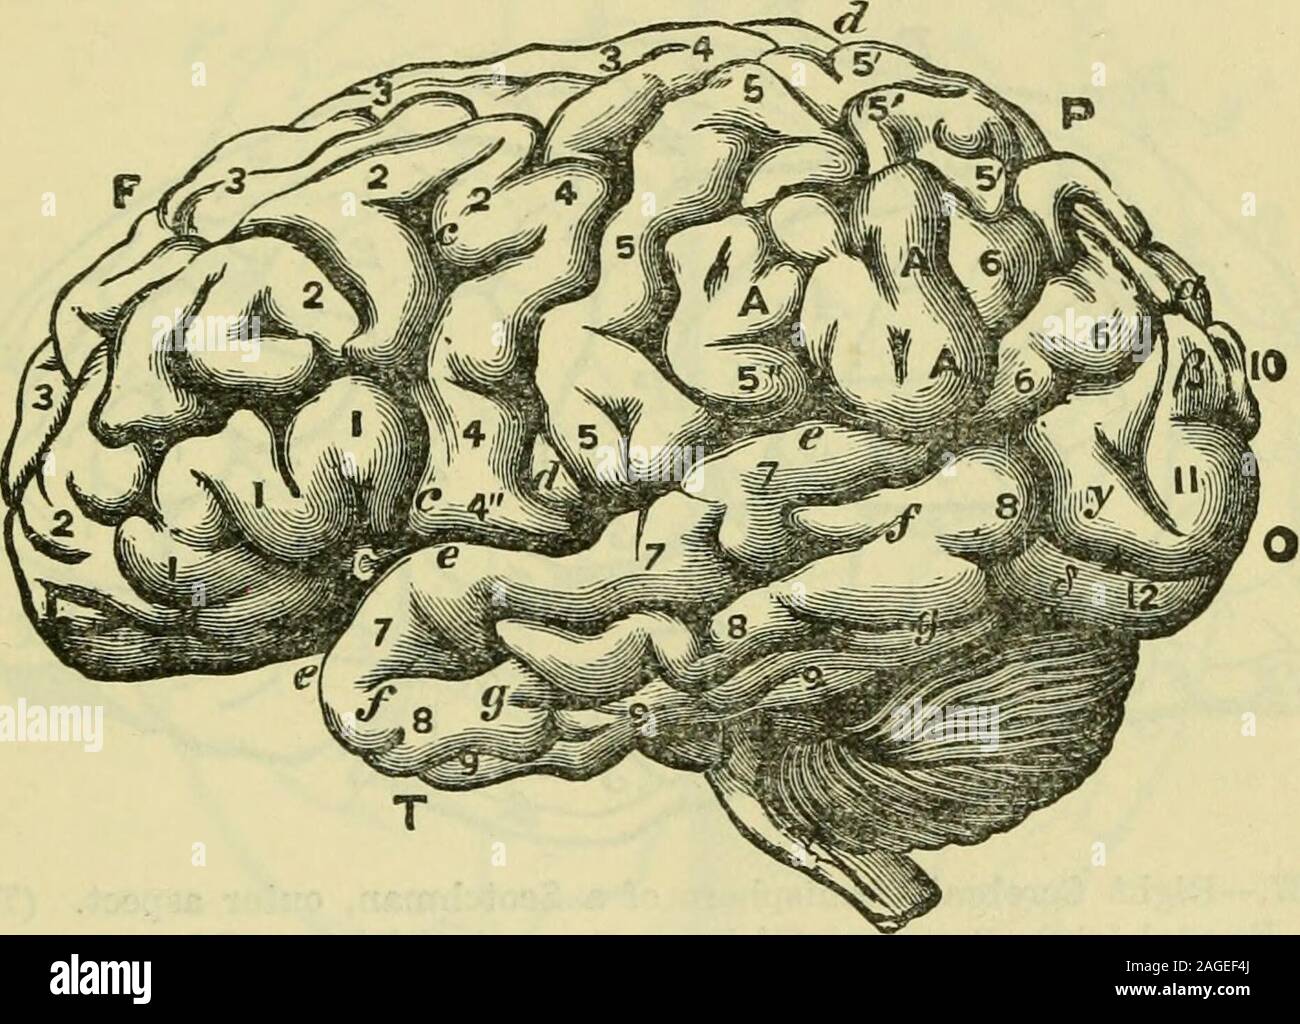 . Il cervello come un organo della mente. Maiale. 135.- Il cervello di un Bushwoman, superiore come aspetto. (Heath, dopo Marshall.) F, frontale loba; O, lobo occipitale; P, parietallobe ; d, d, fessura di Rolando; P, parieto-occipitalfissure •,A,A, supra-lobulo marginale. 2, 2, medio e tion ; 10,10, superiore, e 11, 11, inferiore convolu occipitale- gJ^alloWtion. a, a, primo e /3, seconda biella di convoluzioni. Cap. XXL] di THP: cervello umano. 381 rispetto a quella della Comunità europea, è stata trovata bespecially difettoso in profondità e altezza verticale. Fessure, i lobi e circonvoluzioni delle Cere-brum. La fessura della Sylvi Foto Stock